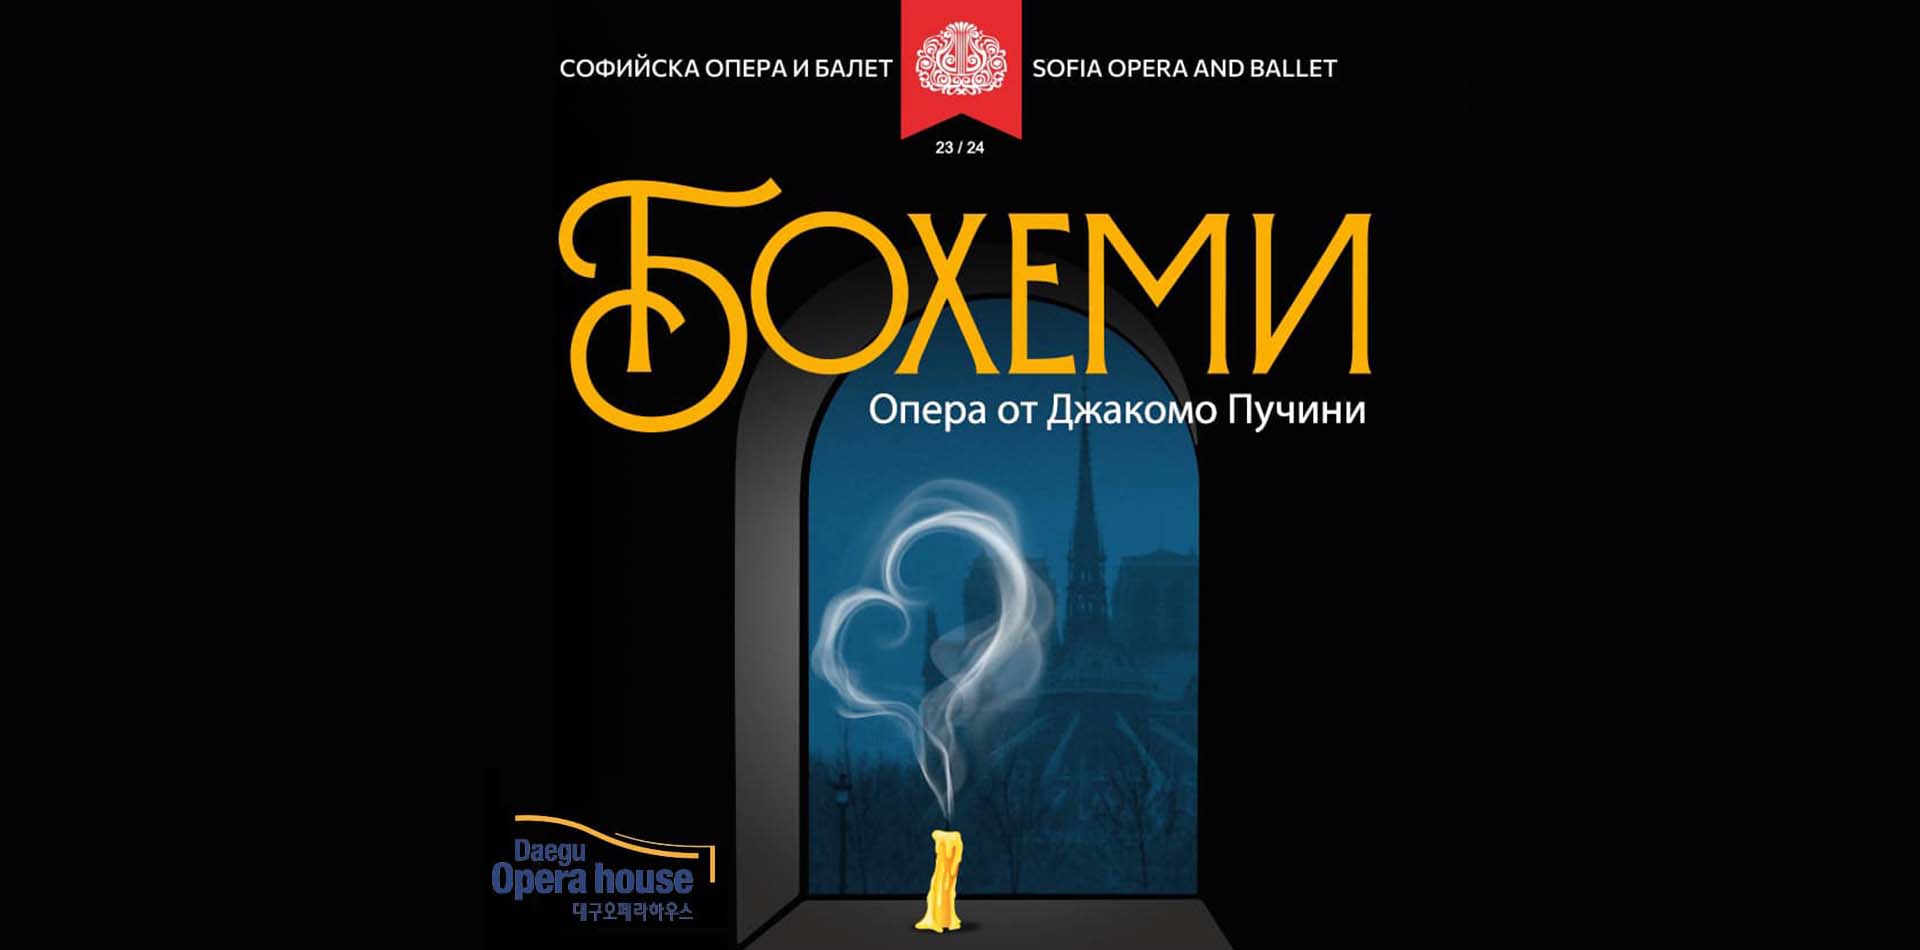 Операта „Бохеми“ от Джакомо Пучини се завръща на сцената на Софийската опера с три спектакъла на 15, 16, 17 декември. 